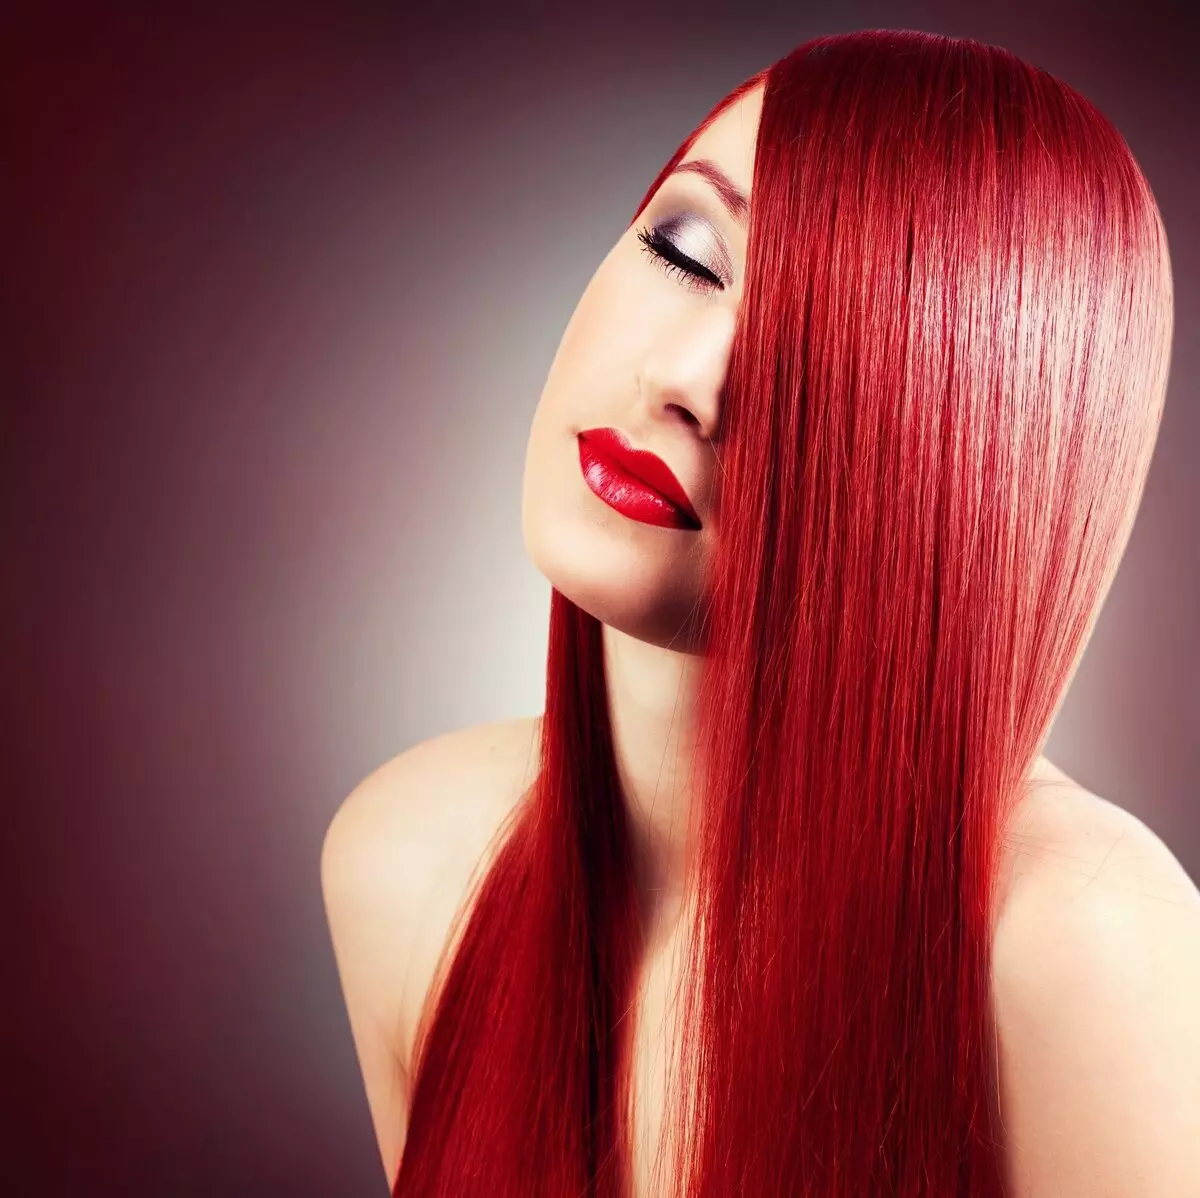 Ruby matu krāsa (28 foto): Tumšas un citi toņos rubīna krāsas, matu iekrāsojot smalkumus šajā krāsā 5280_23